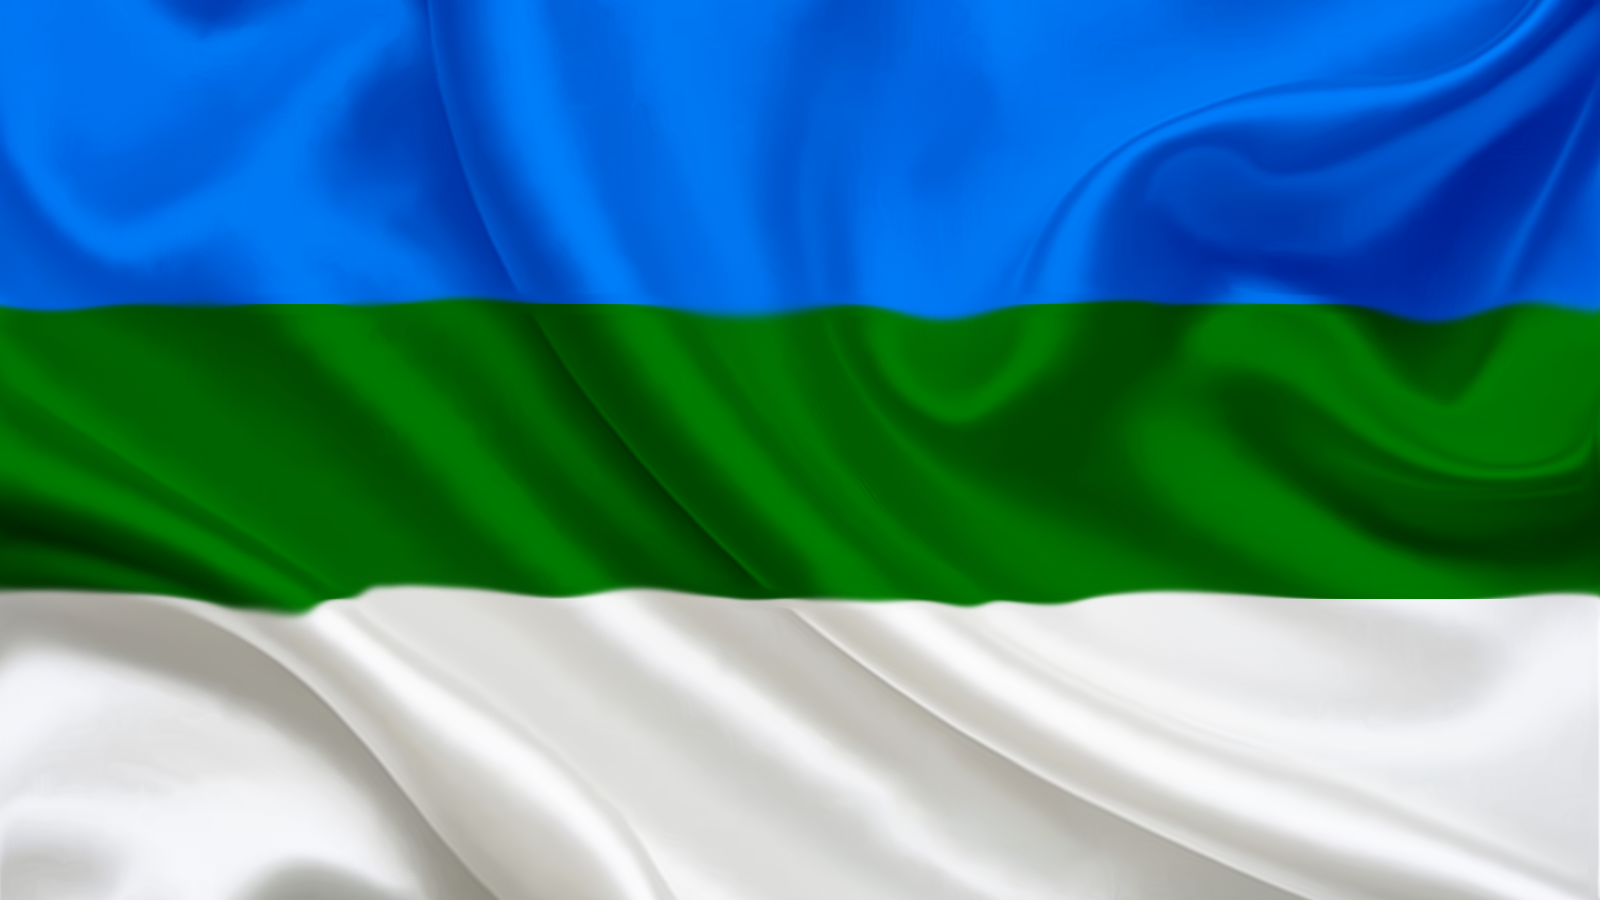 Башкортостан: набросок плана построения нового государства